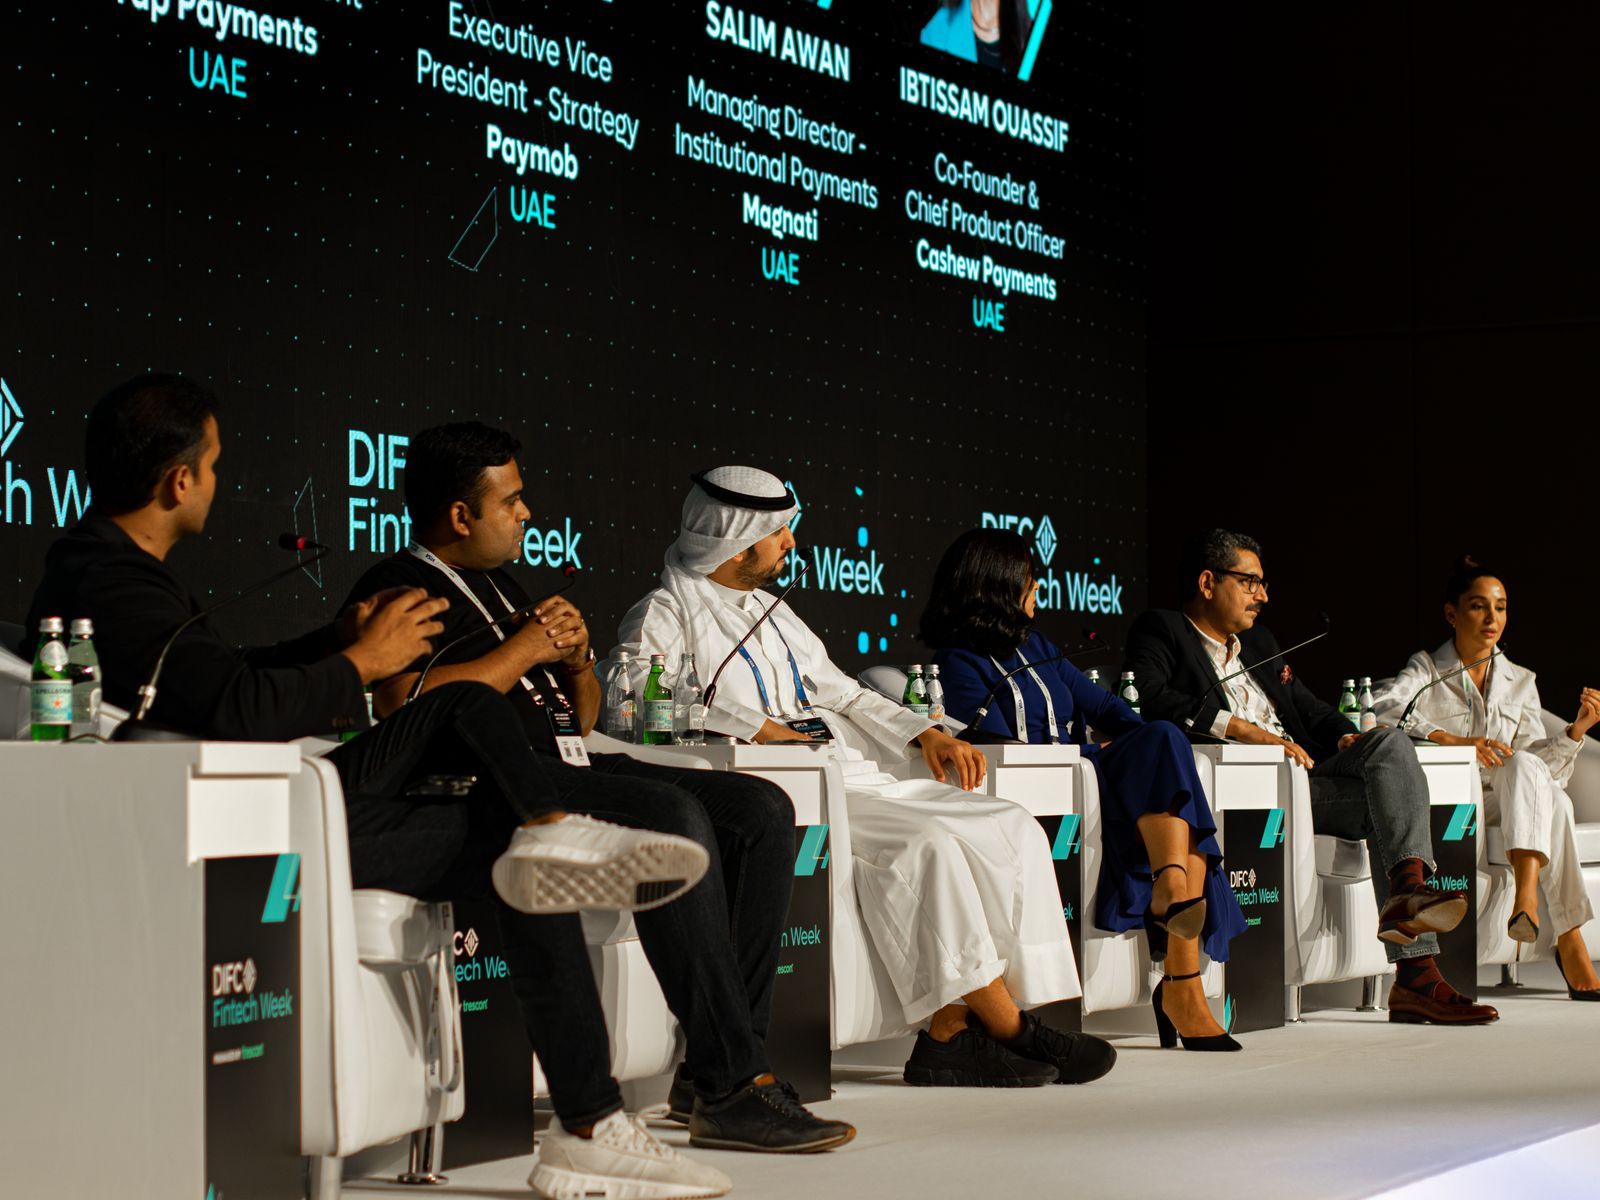 فيصل الهارون ، نائب الرئيس الأول لمجموعة تاب للمدفوعات، في جلسة مناقشة في أسبوع مركز دبي العالمي 